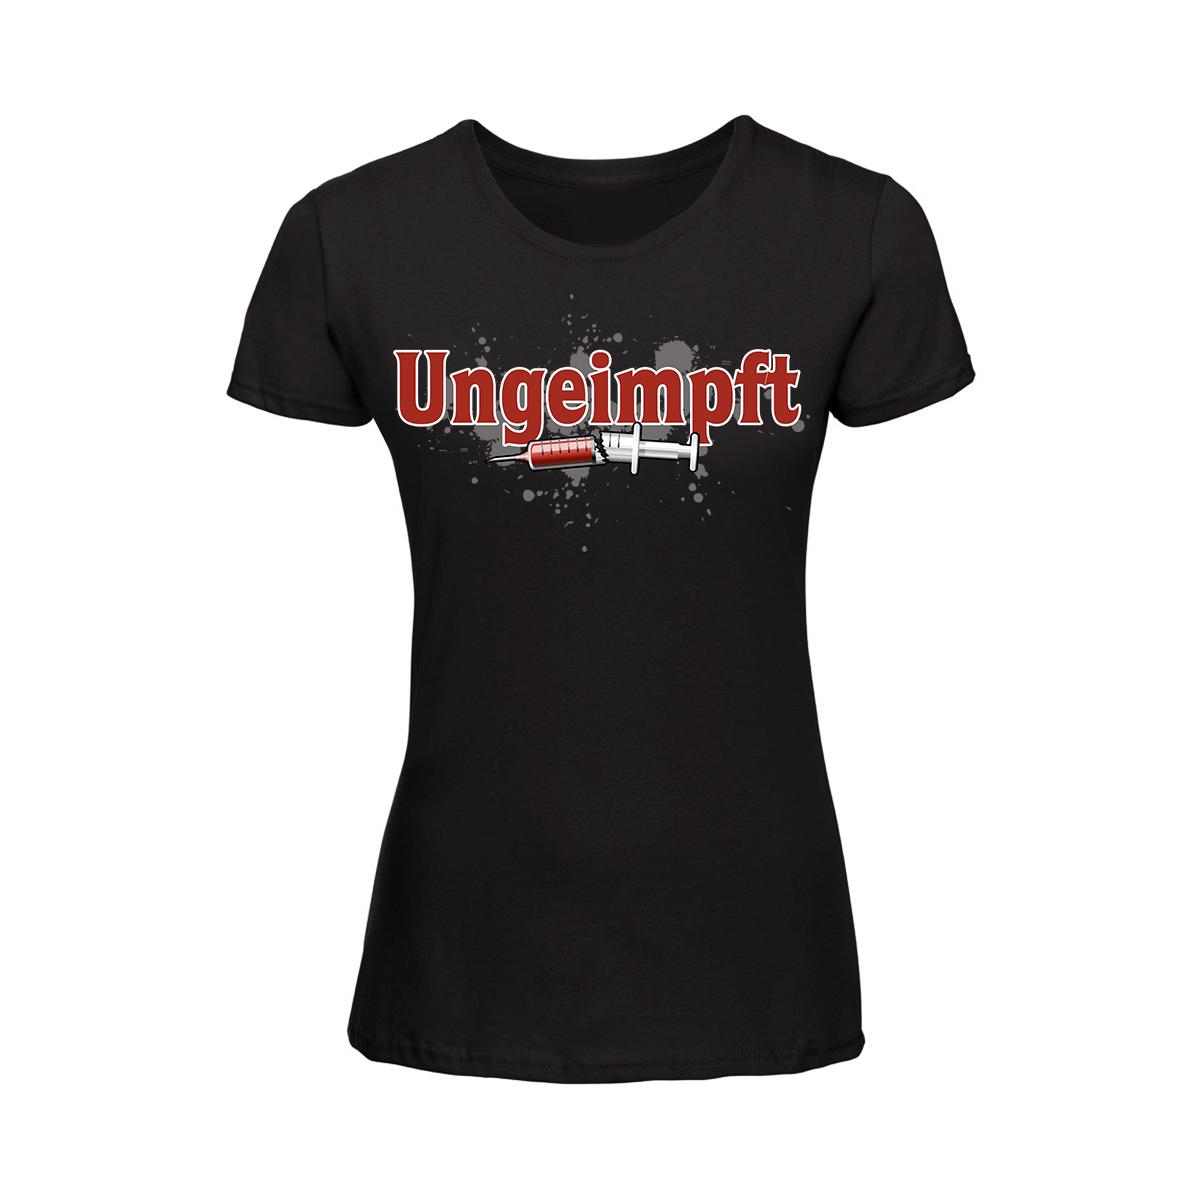 Ungeimpft - Frauen T-Shirt - schwarz